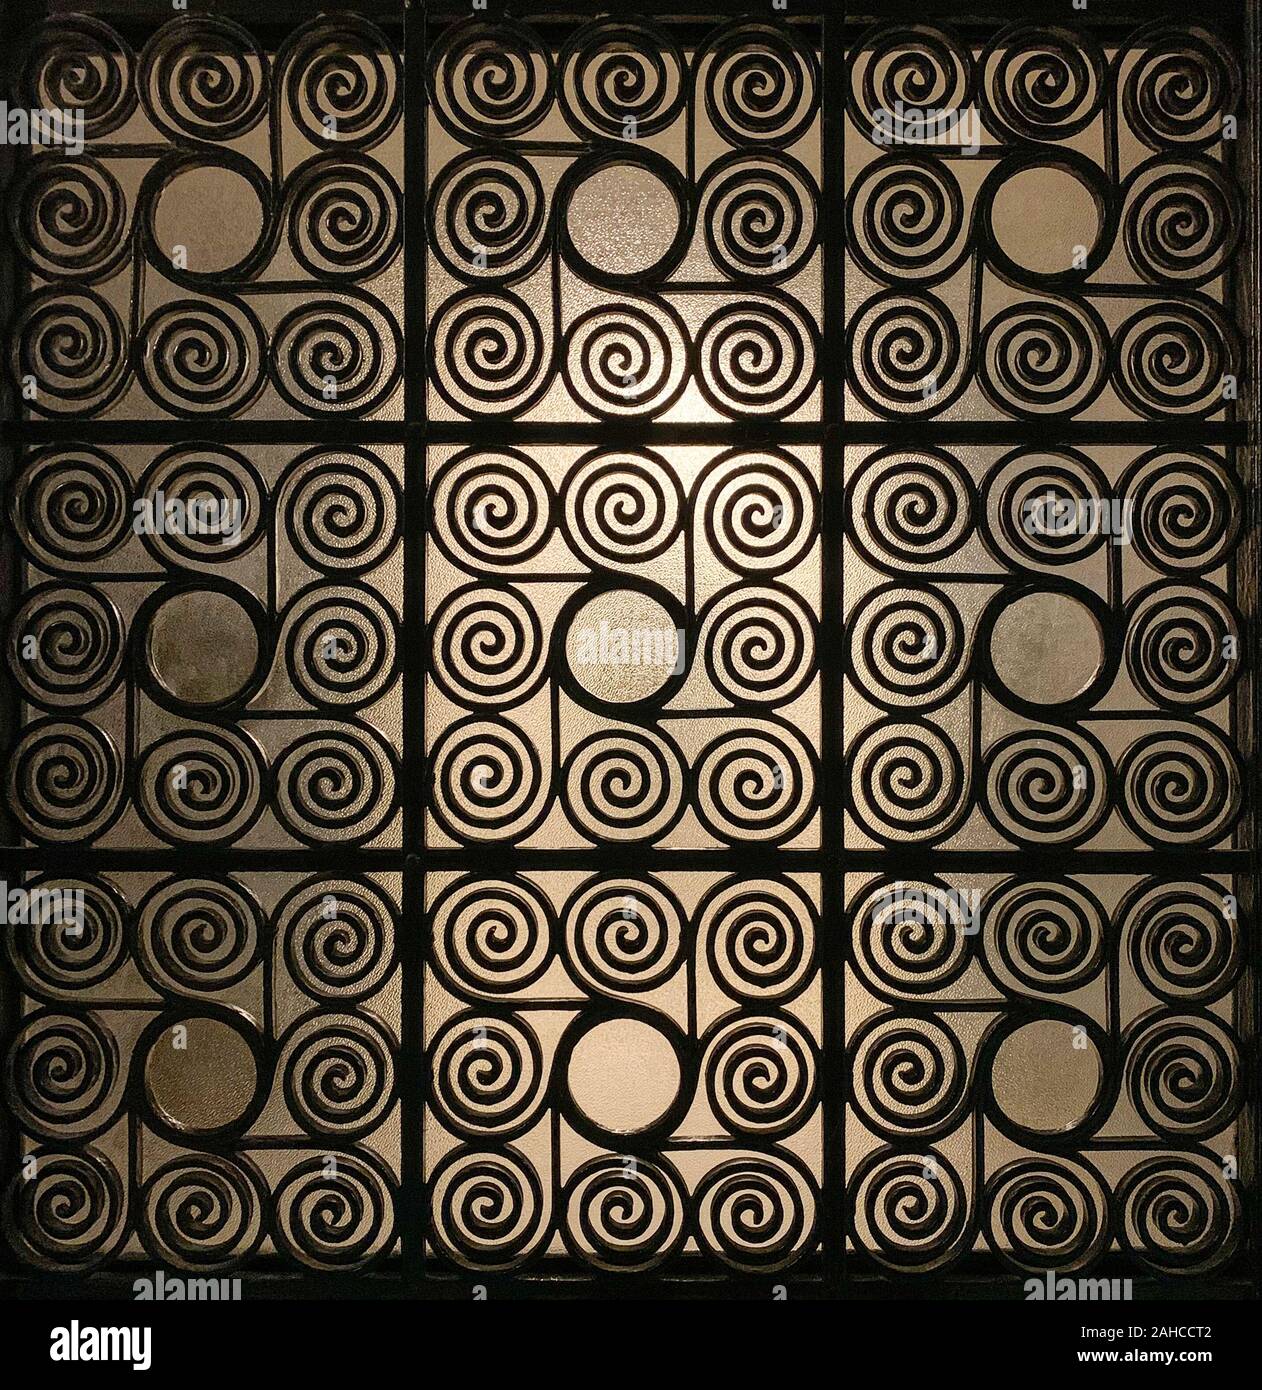 Griechische Wrought Iron Gate Gitter, verziert mit kunstvoll verdrillte Spiralen und mit Milchglas im Hintergrund, dass leicht beleuchtet wird. Stockfoto